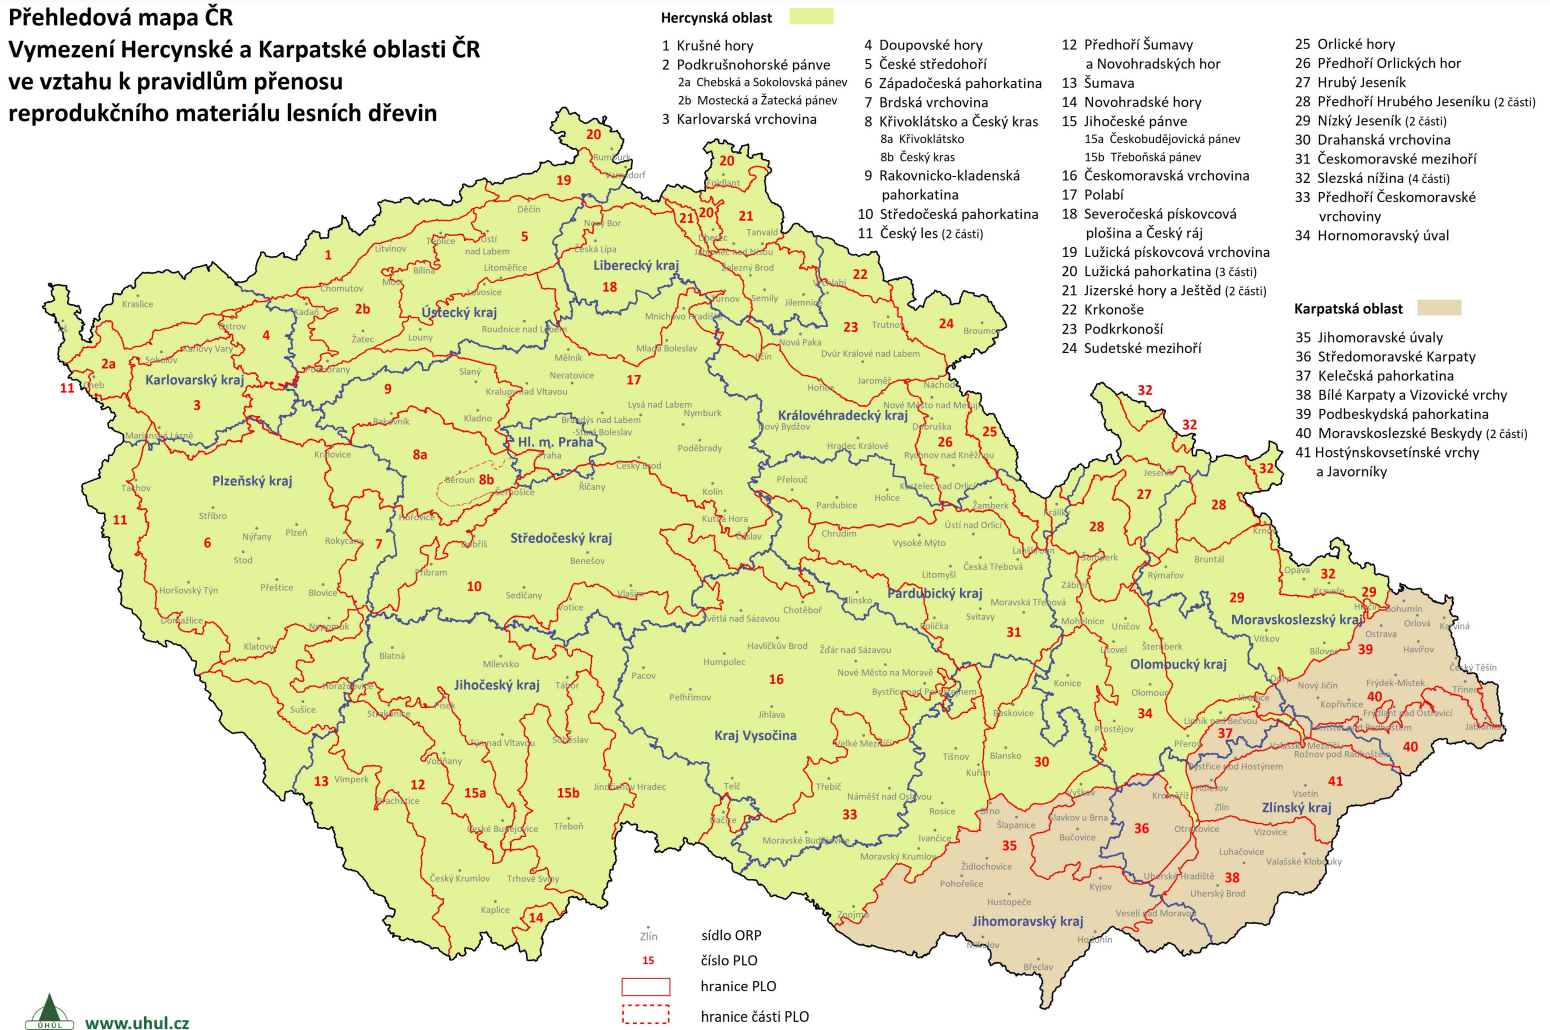 Vymezení přírodních lesních oblastí (PLO), zdroj: https://www.uhul.cz/mapy-a-data/prehledove-mapy-cr/).